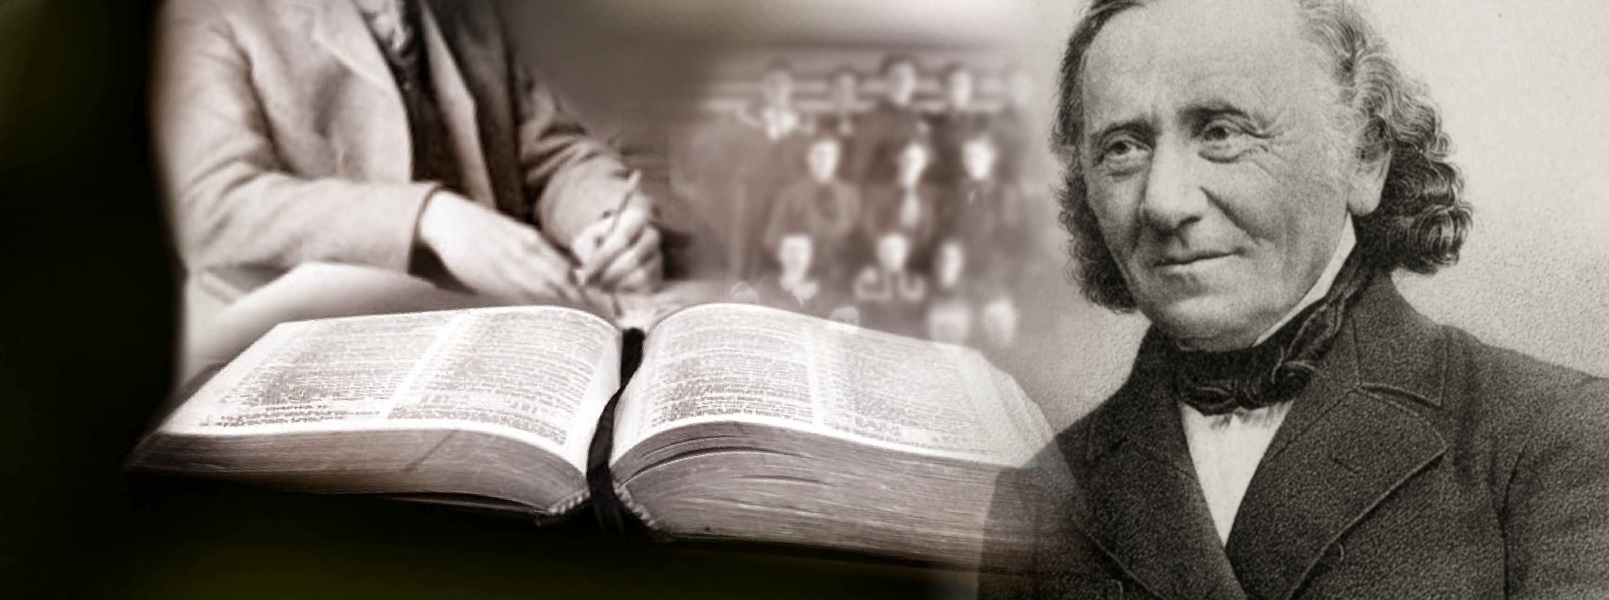 Carl Paul Caspari and a picture of a bible